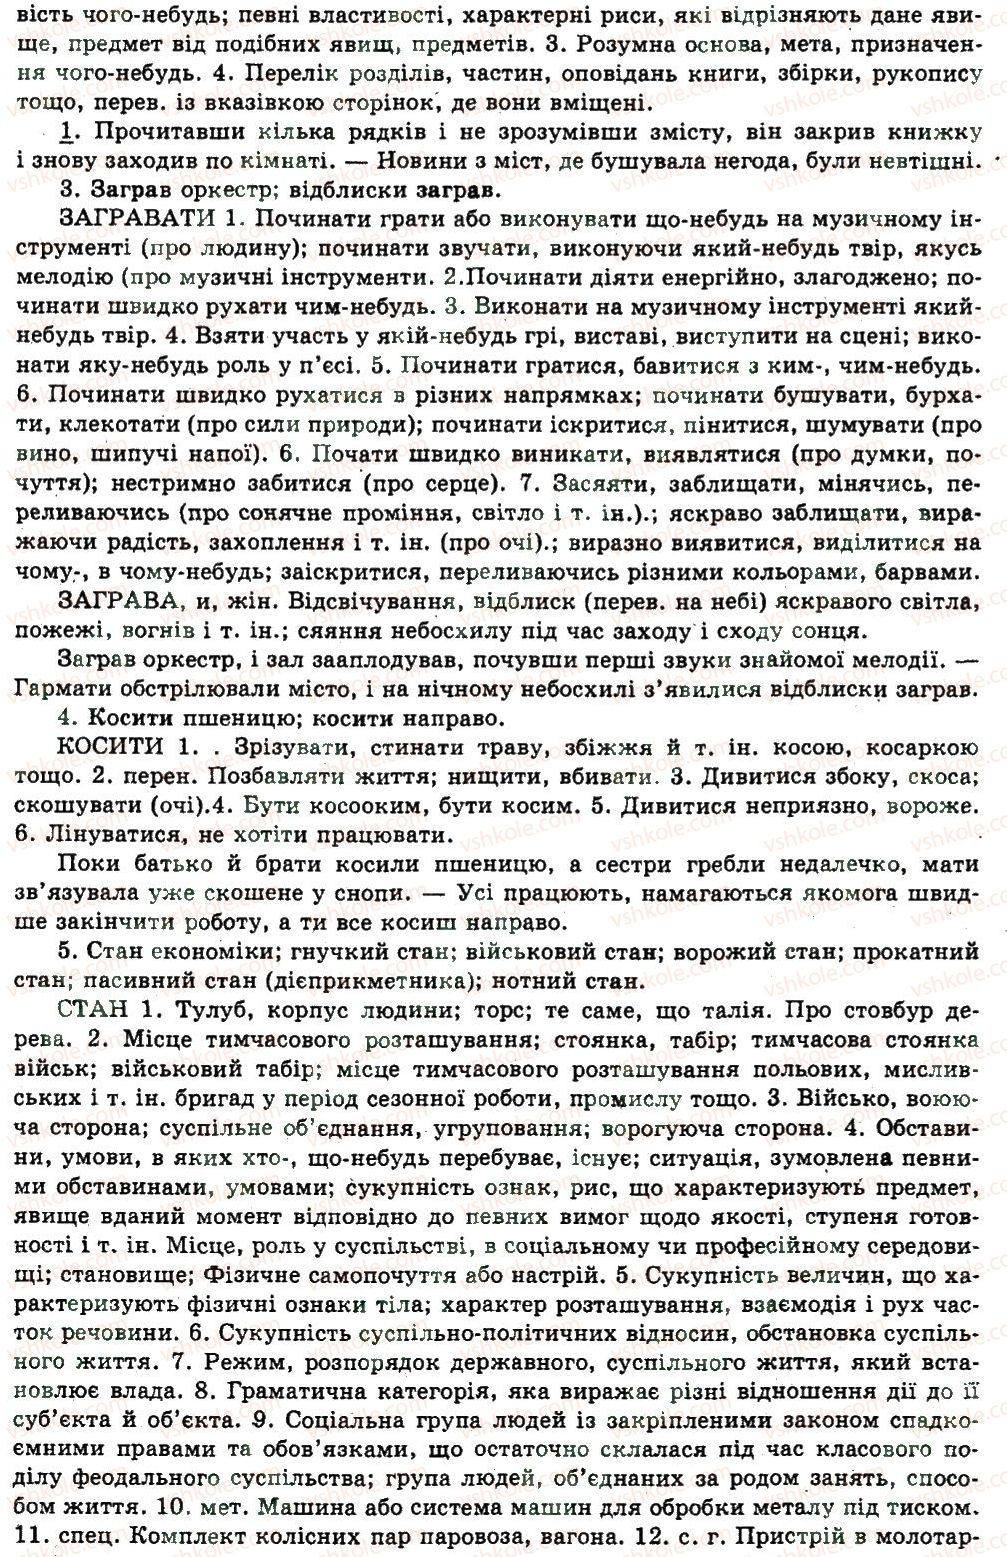 11-ukrayinska-mova-nv-bondarenko-2011--uzagalnennya-i-sistematizatsiya-najvazhlivishih-vidomostej-z-osnovnih-rozdiliv-nauki-pro-movu-23-leksikologiya-frazeologiya-423-rnd2570.jpg